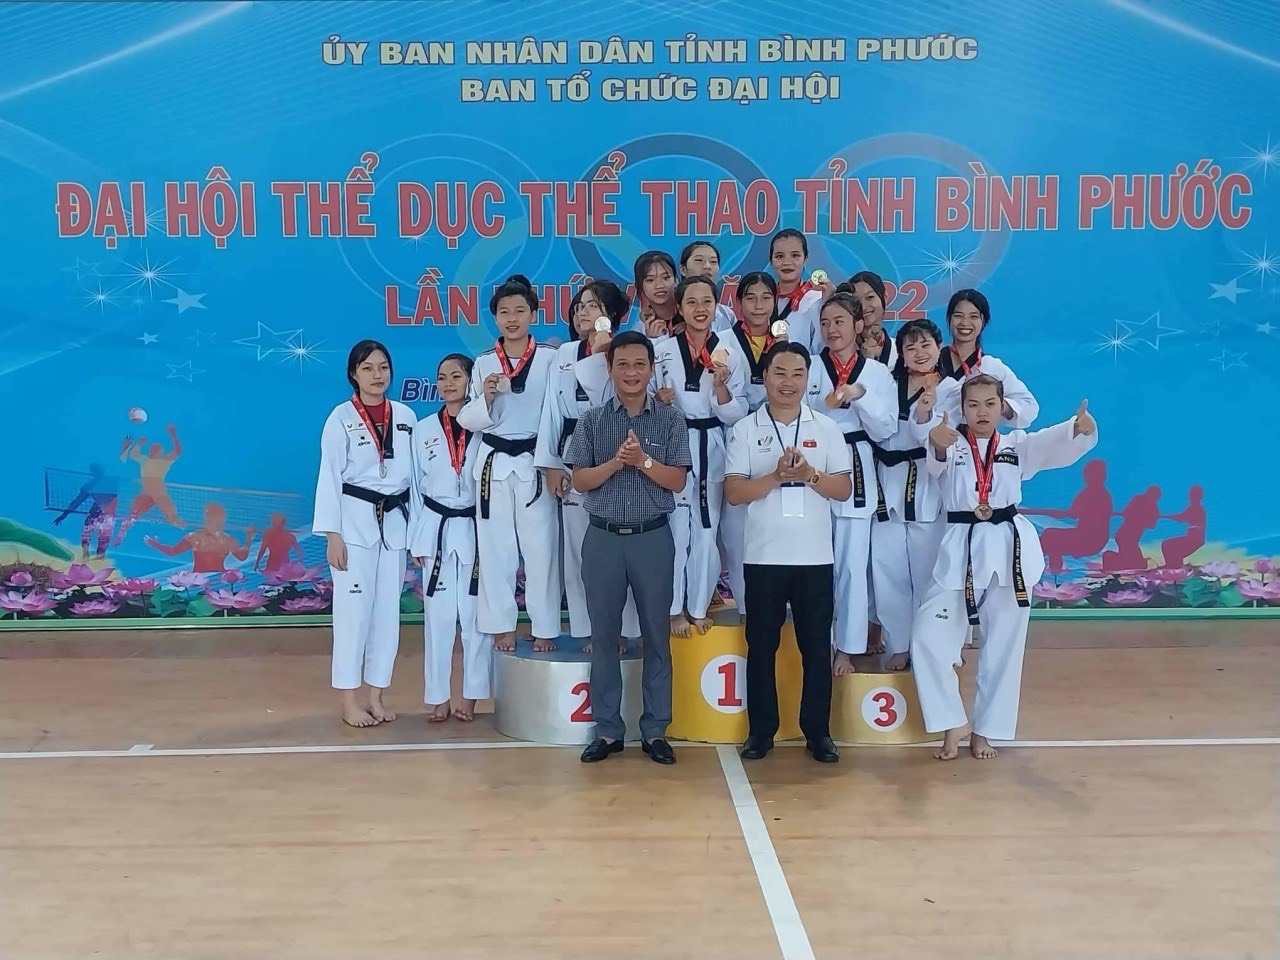 Huyện Phú Riềng đạt 22 huy chương tại Đại hội Thể dục Thể thao tỉnh Bình Phước